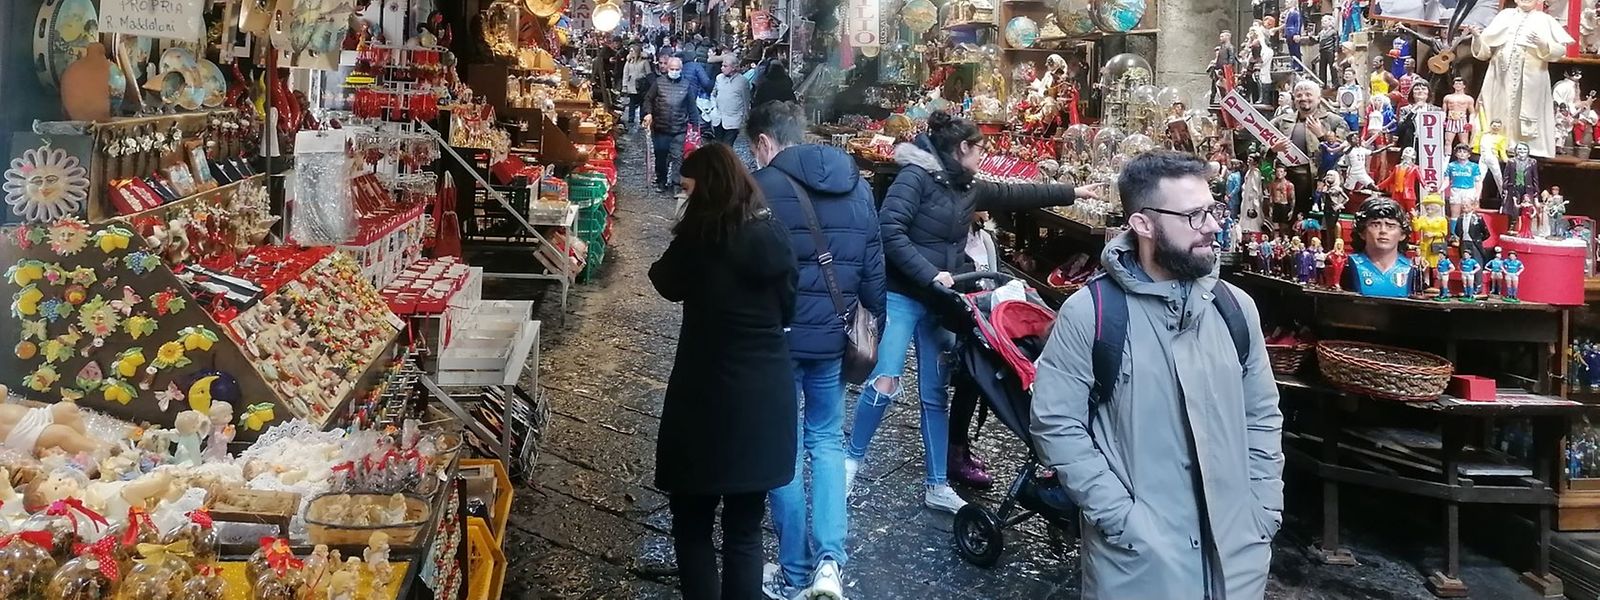 Via San Gregorio Armeno: An der berühmten Gasse der Weihnachtskrippen in Neapel wimmelt es von Engeln, Hirten, Ochsen und Eseln - und von Touristen.